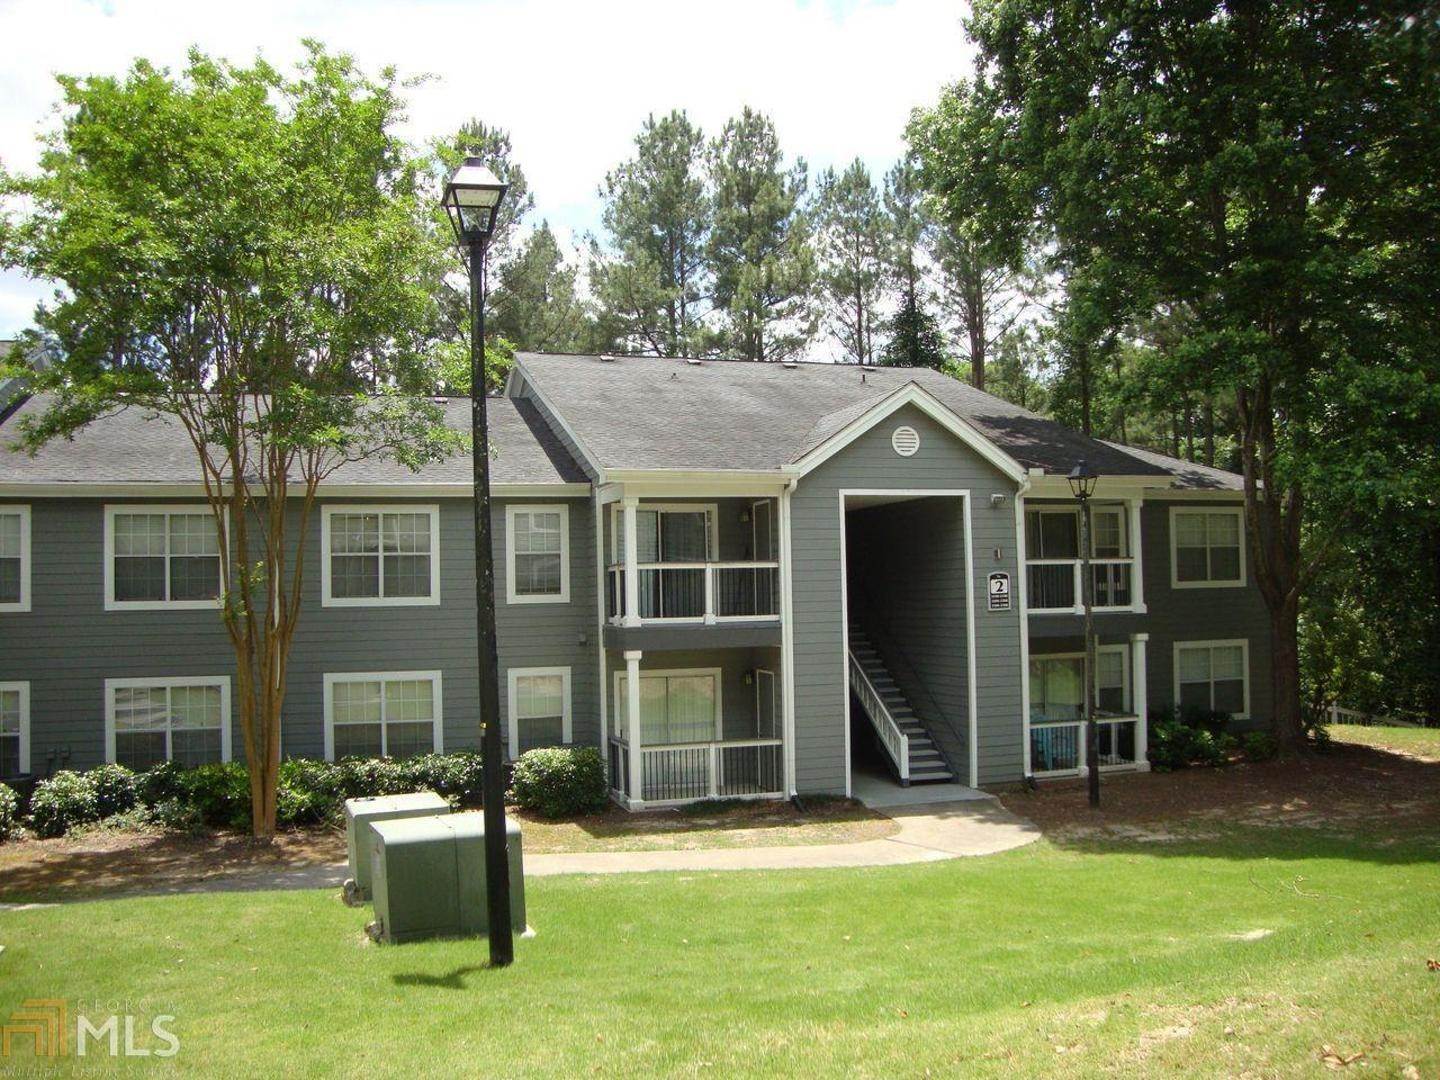 Condominium at Atlanta, GA 30350